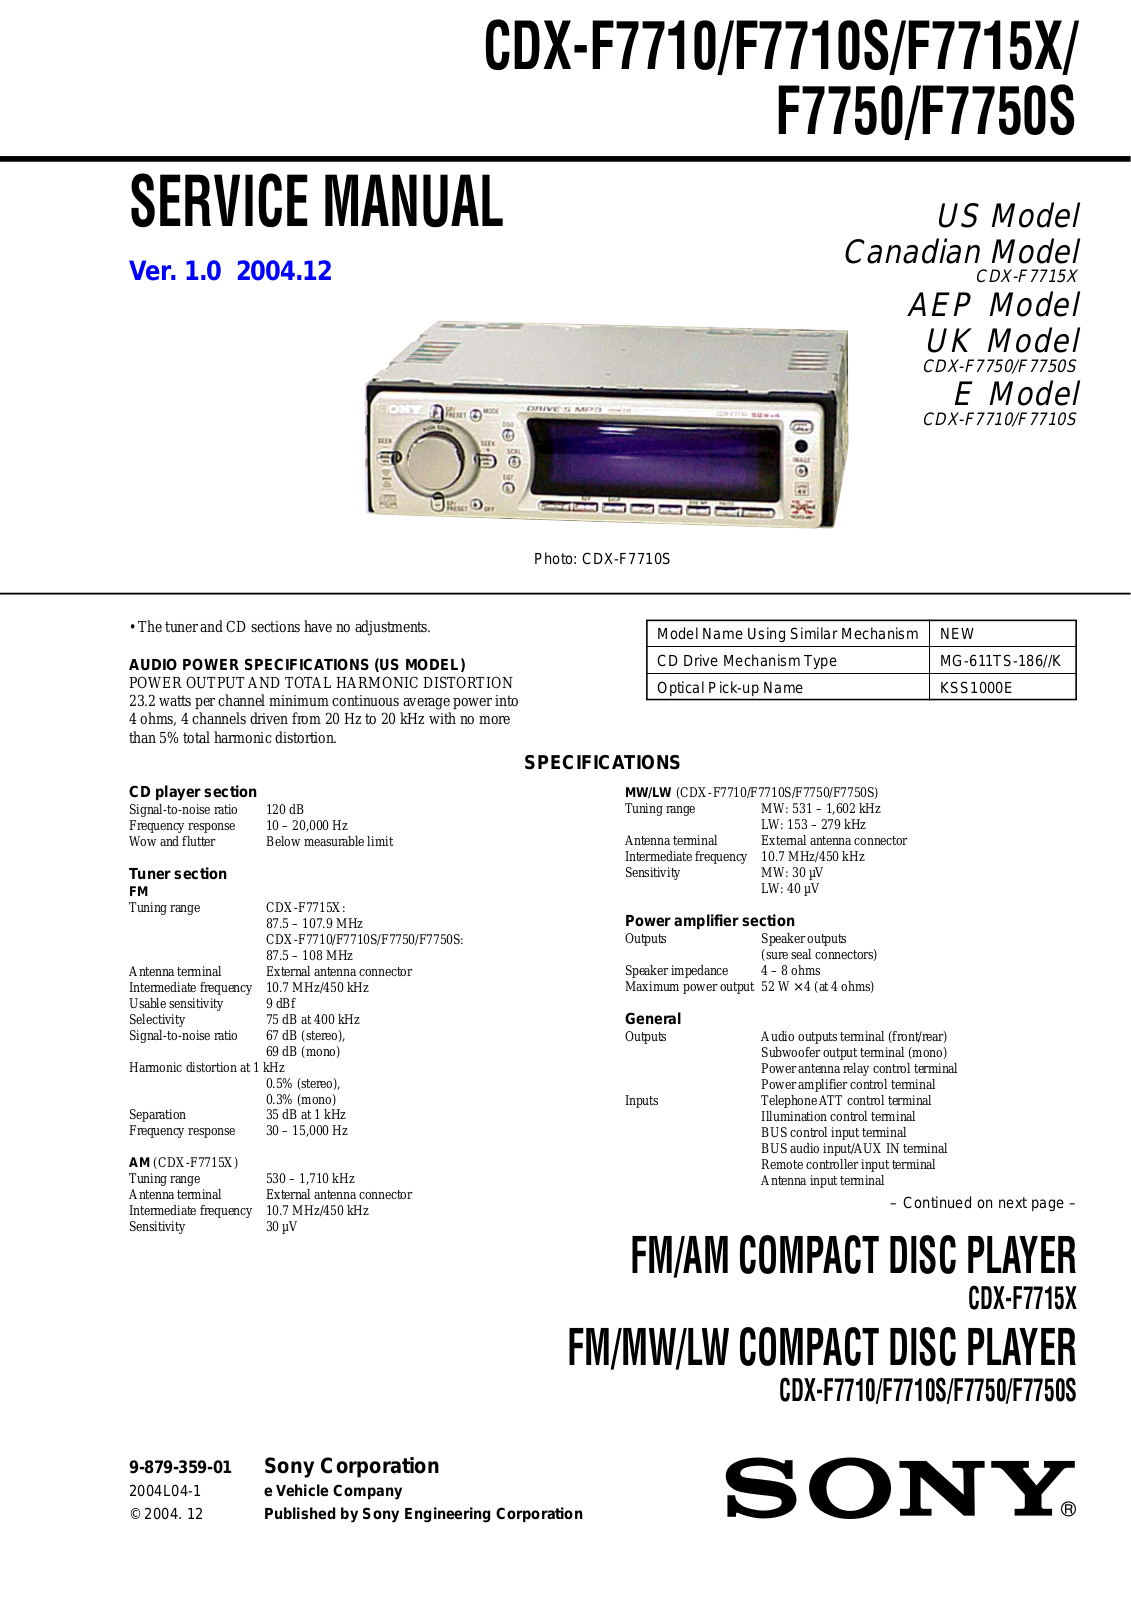 Sony CDX-F7710, CDX-F7710s, CDX-F7715x, CDX-F7750, CDX-F7750s Schematic